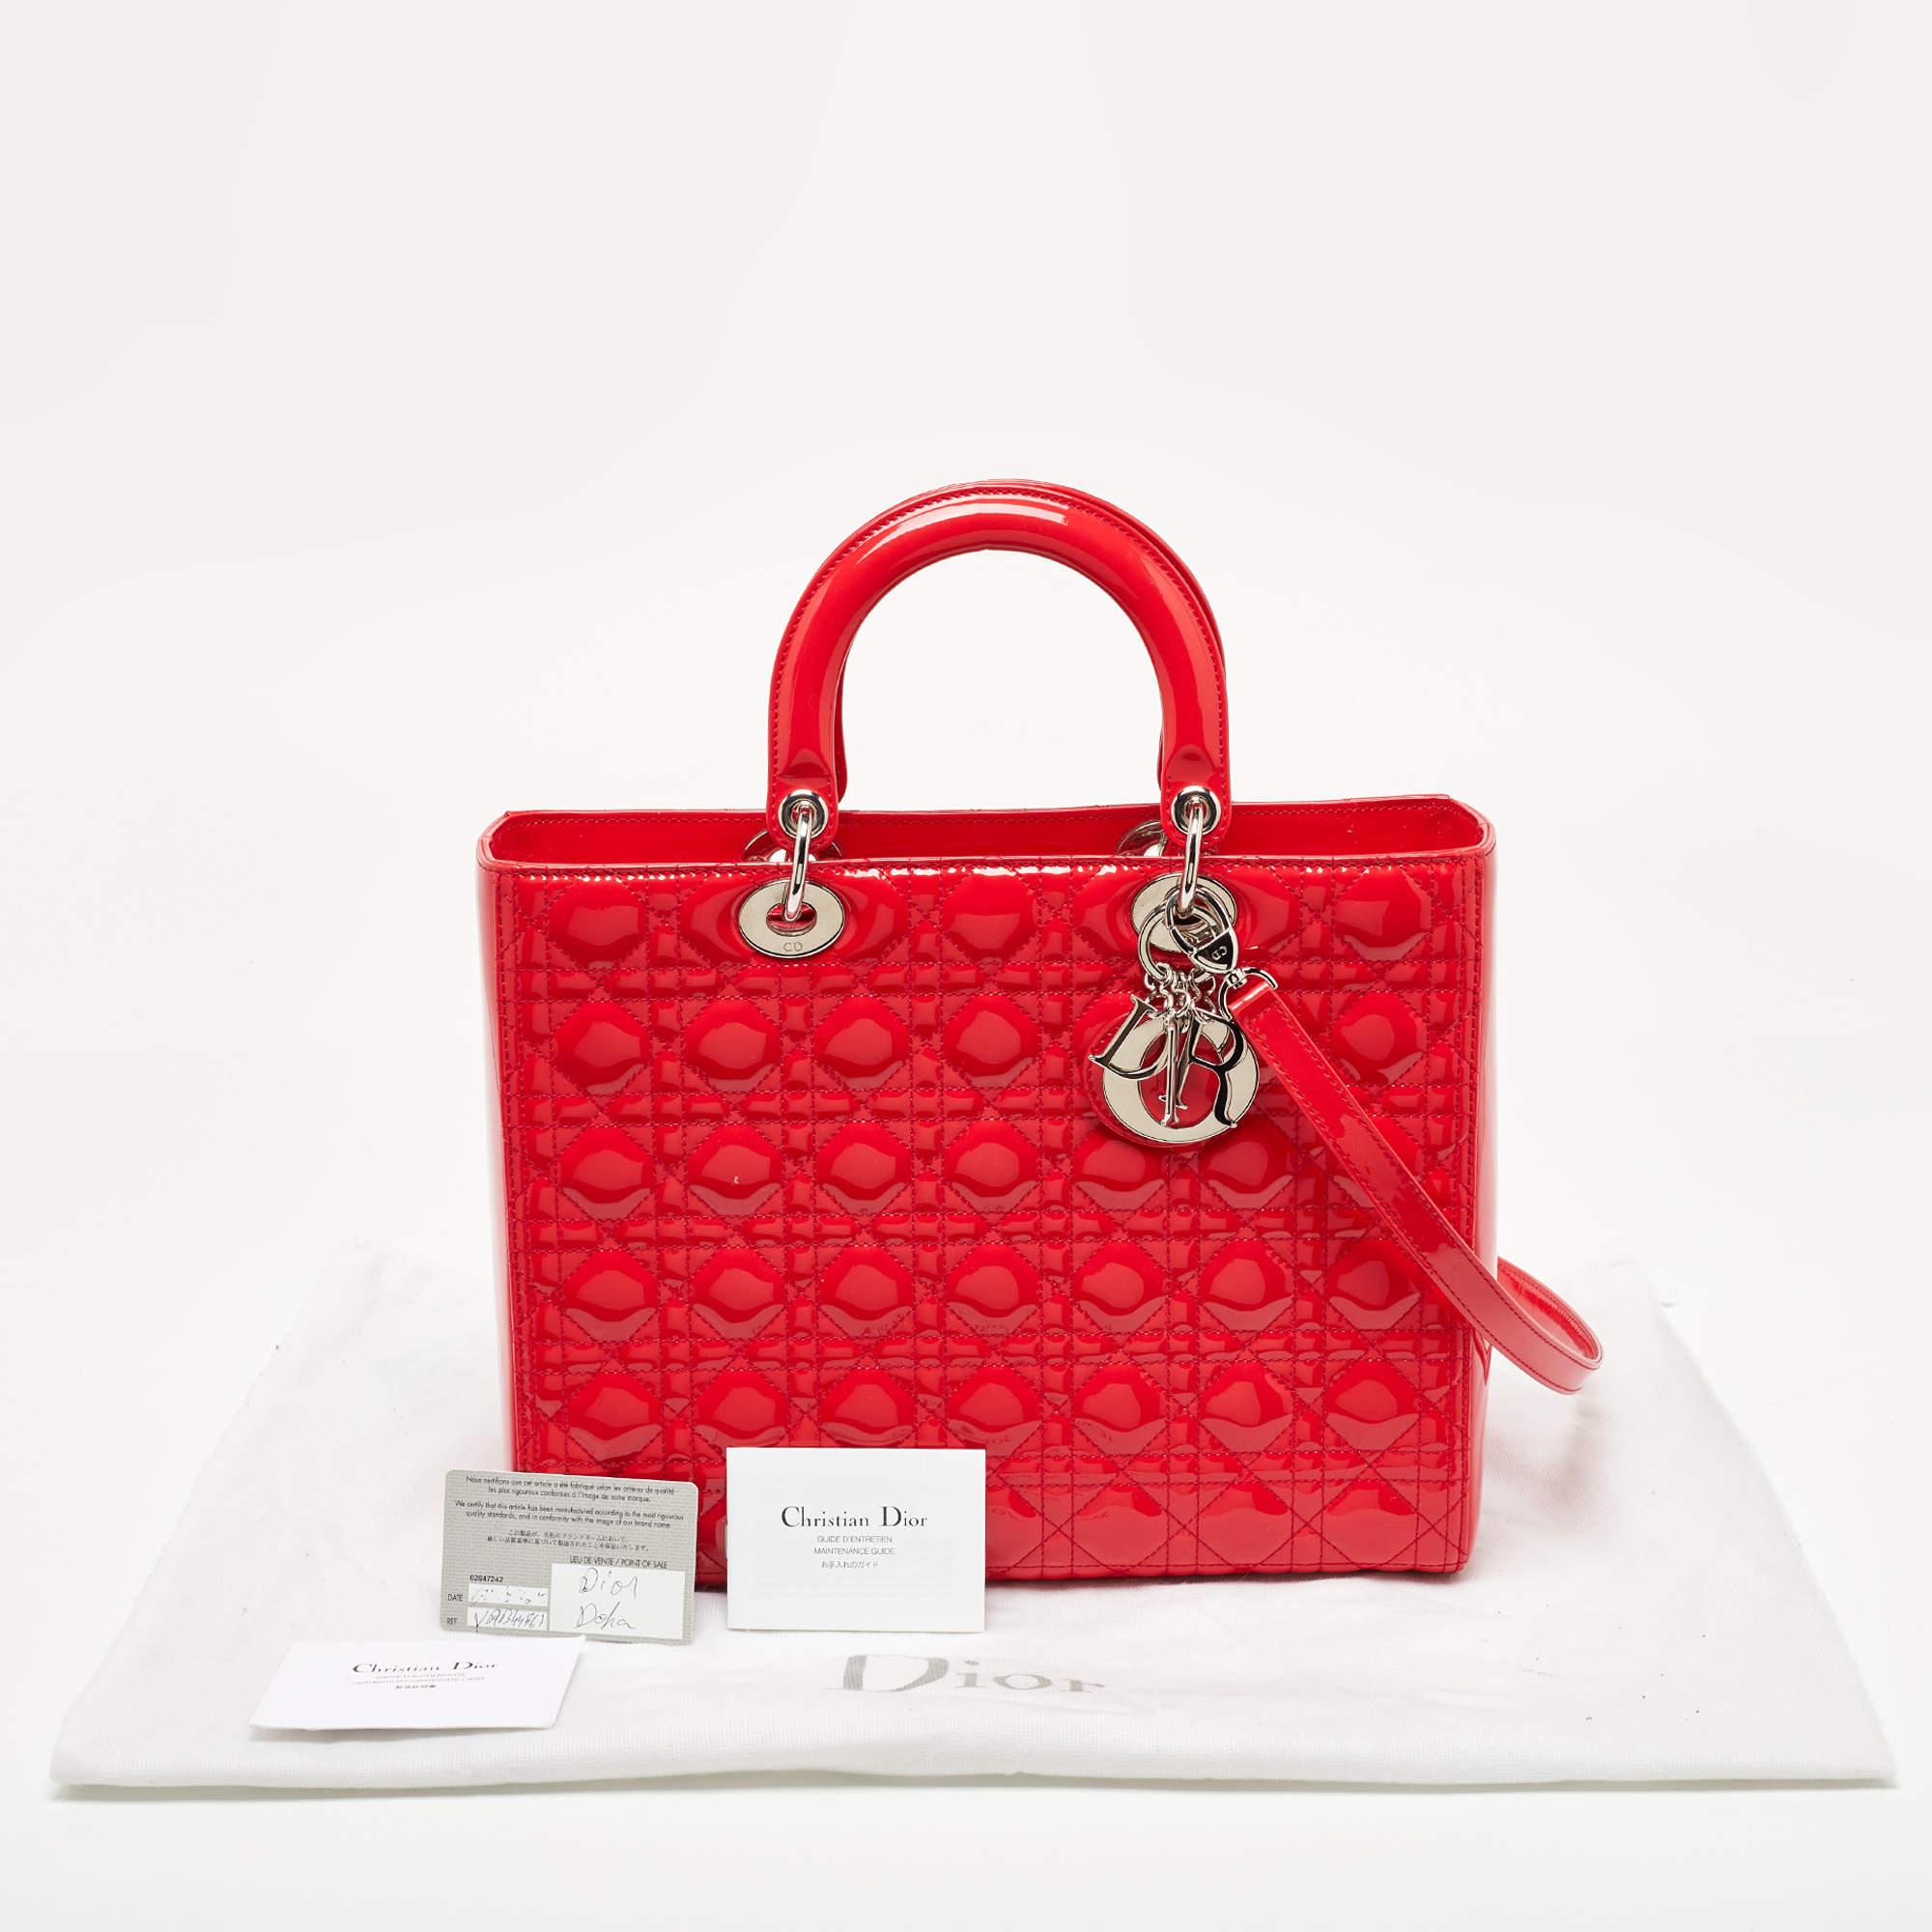 Dior - Grand sac cabas Lady Dior en cuir verni rouge cannage 9